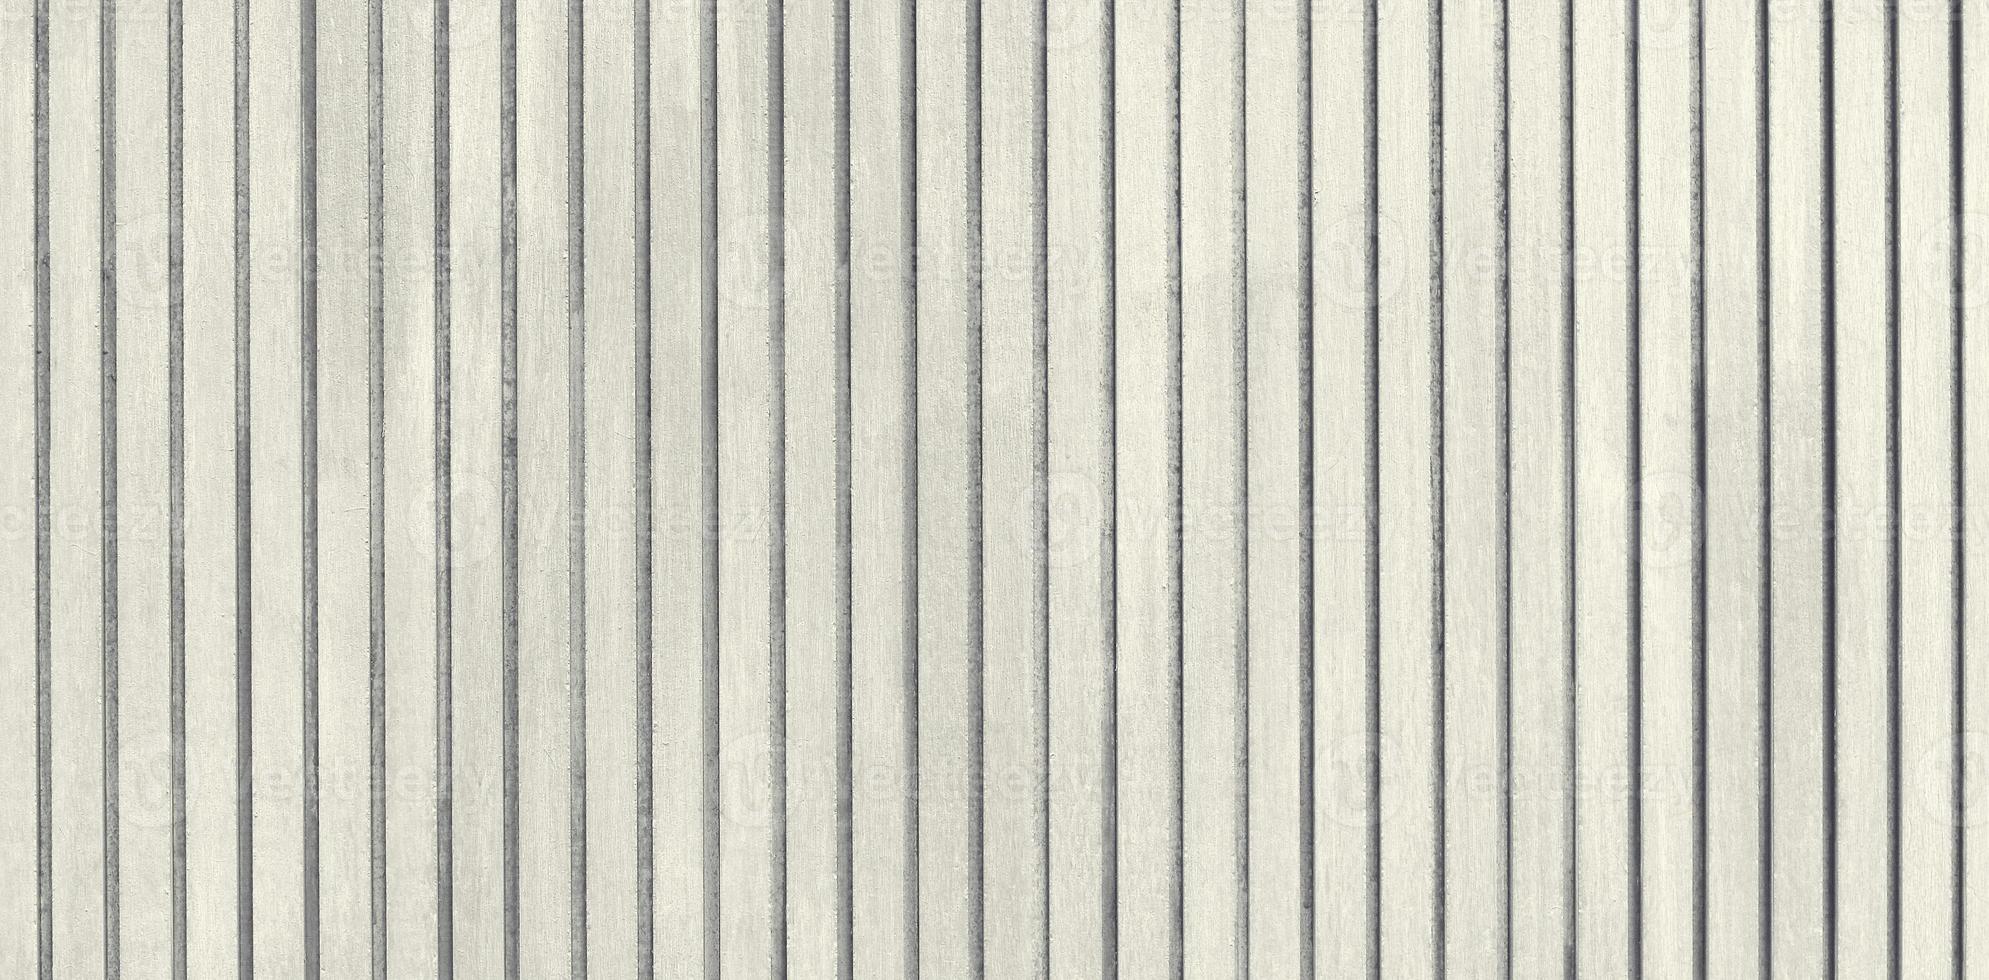 vita träribbor för golv- och väggbakgrund foto